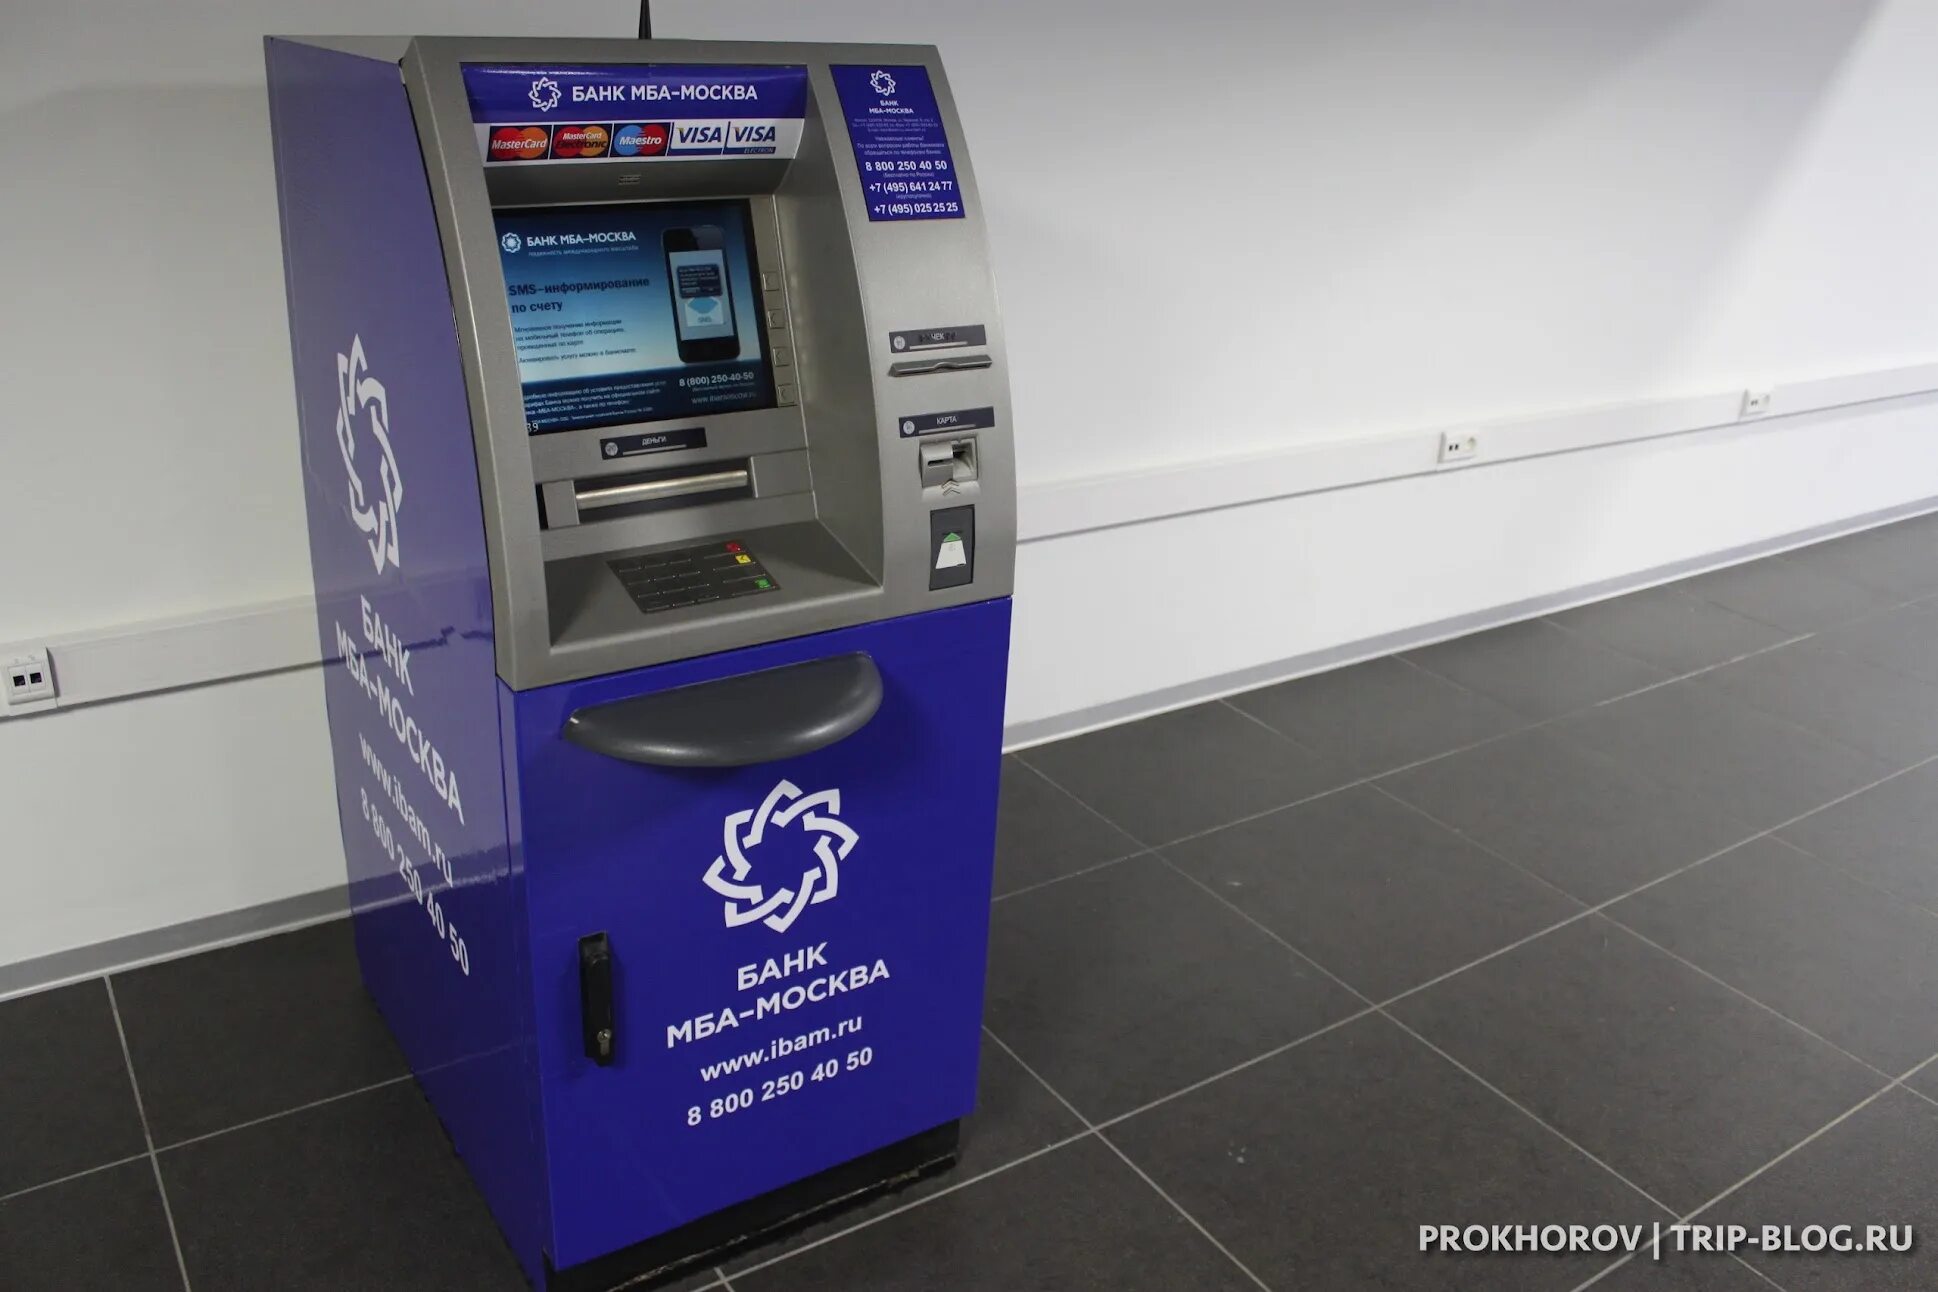 Есть ли банкомат втб. Банкомат МБА-Москва. Банкомат в аэропорту. Терминал обмена валюты. Банкоматы в Москве.